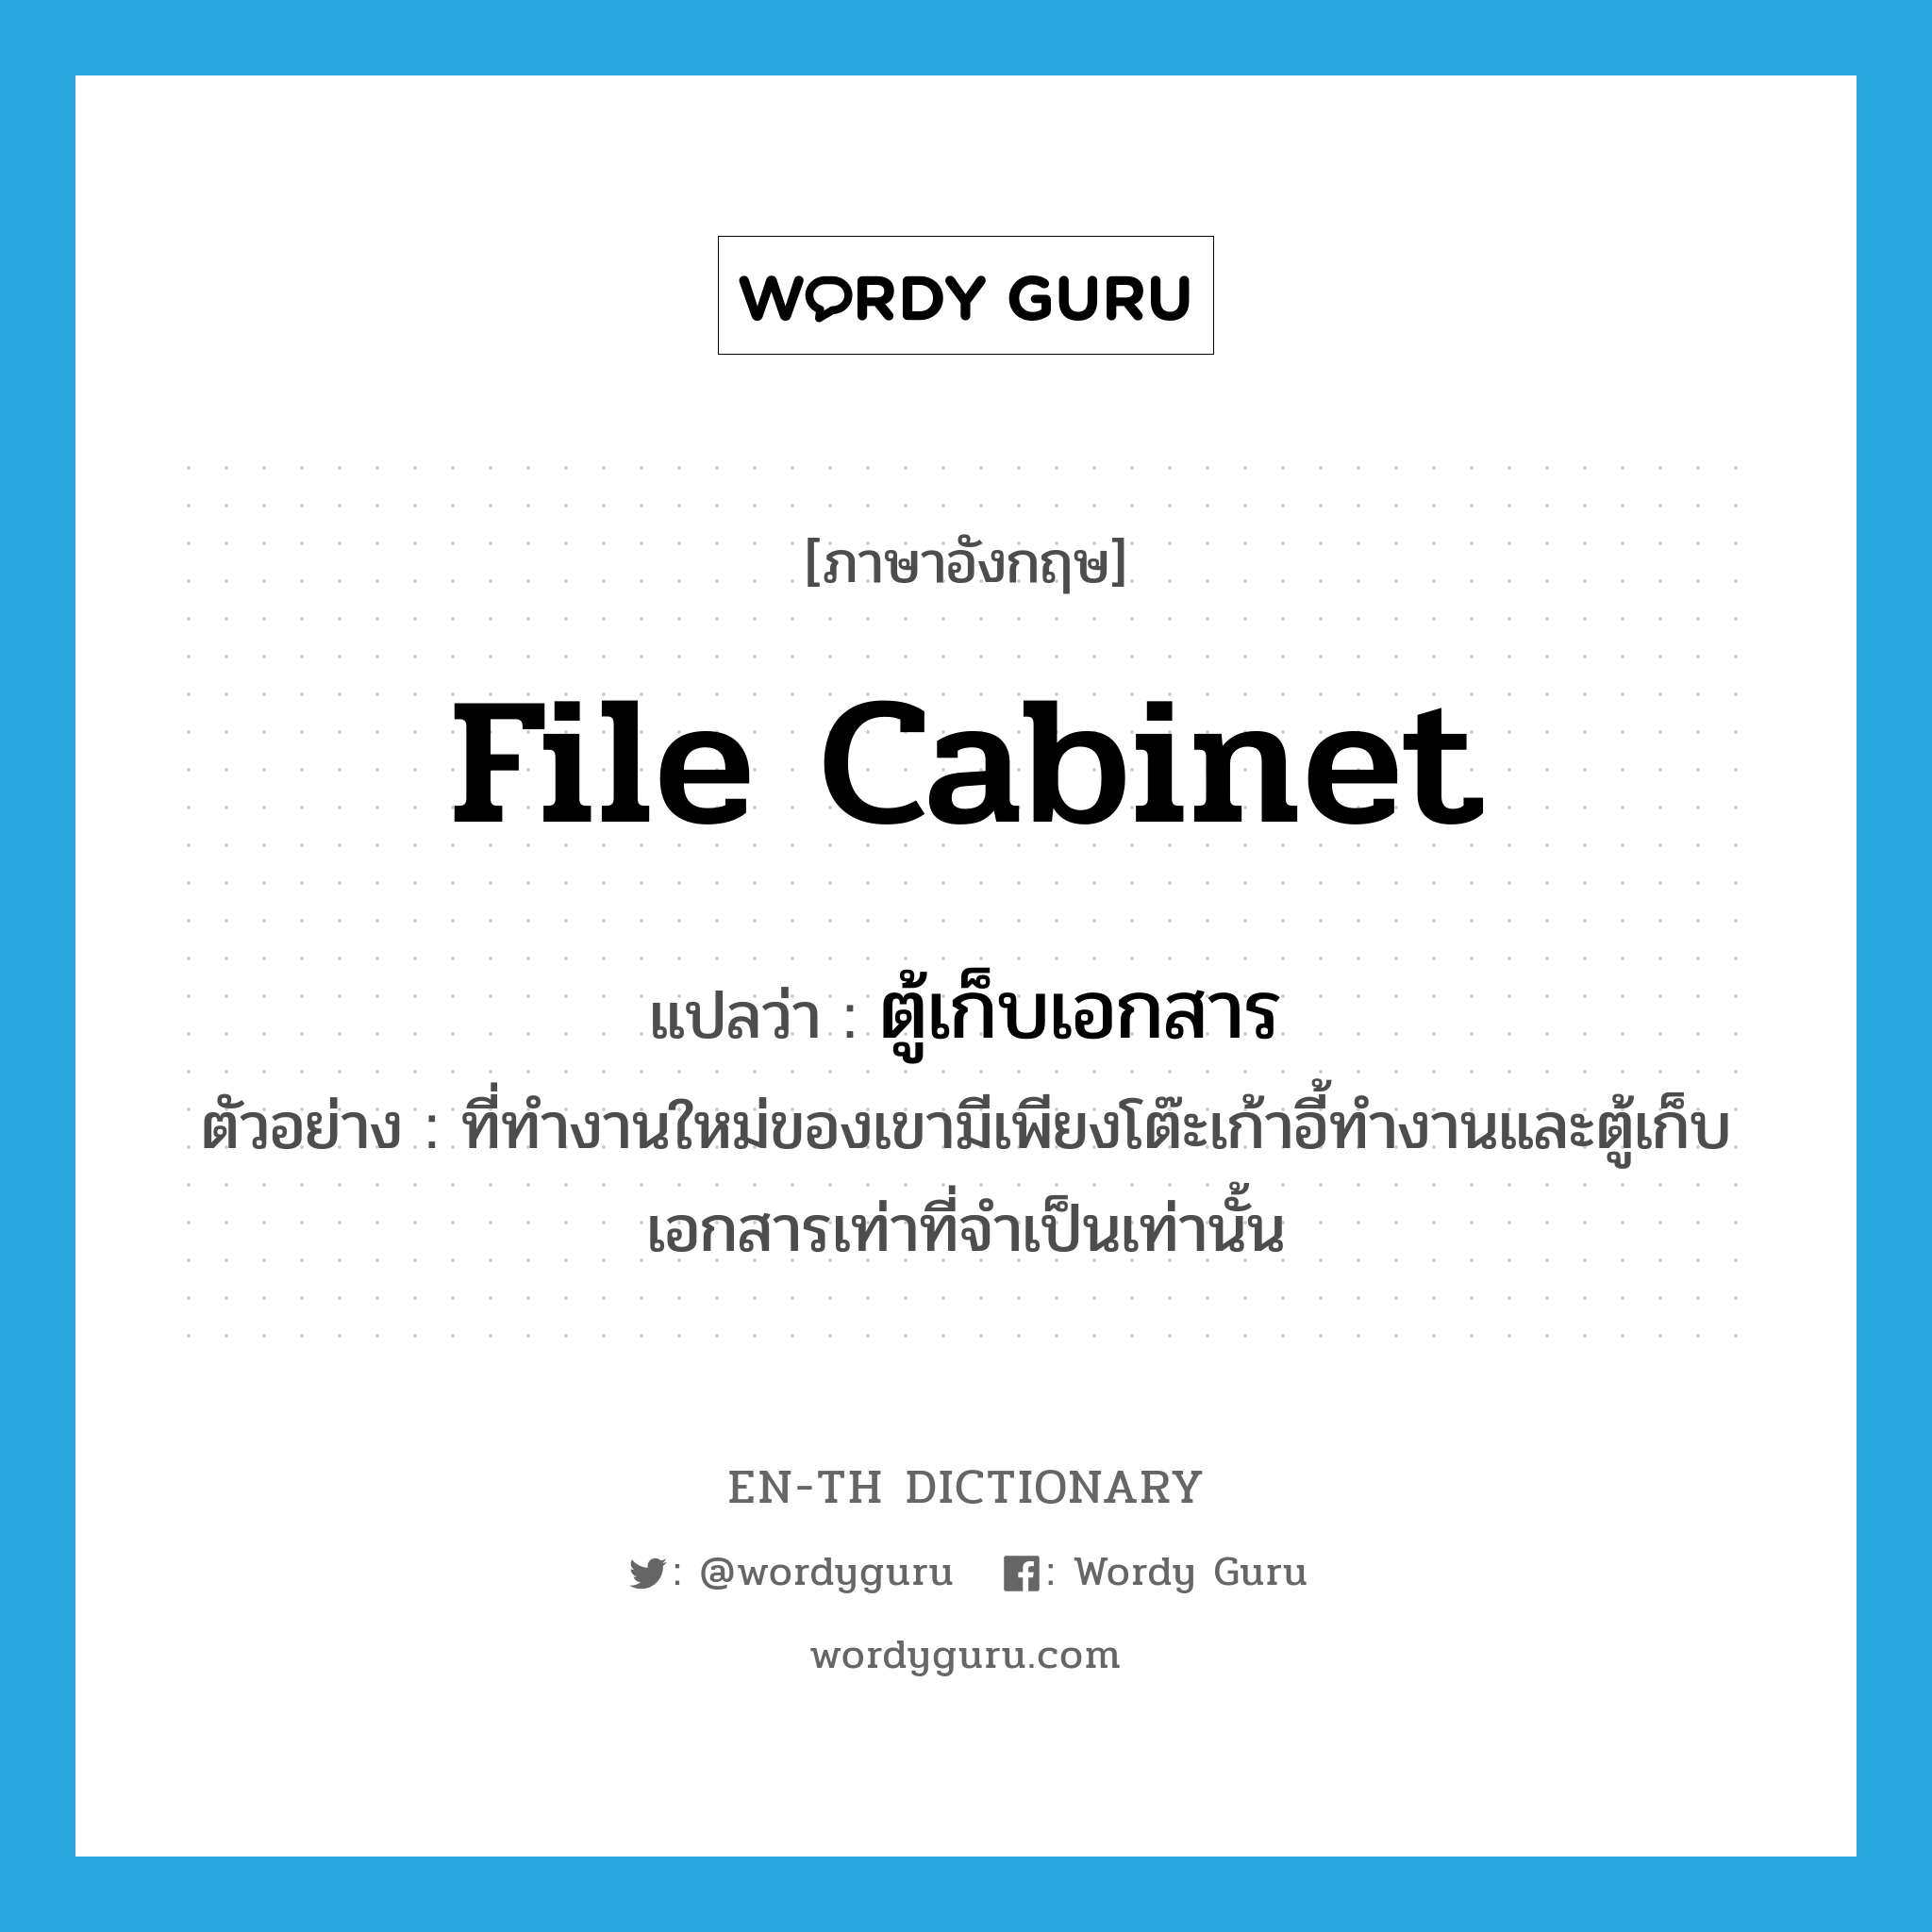 file cabinet แปลว่า?, คำศัพท์ภาษาอังกฤษ file cabinet แปลว่า ตู้เก็บเอกสาร ประเภท N ตัวอย่าง ที่ทำงานใหม่ของเขามีเพียงโต๊ะเก้าอี้ทำงานและตู้เก็บเอกสารเท่าที่จำเป็นเท่านั้น หมวด N